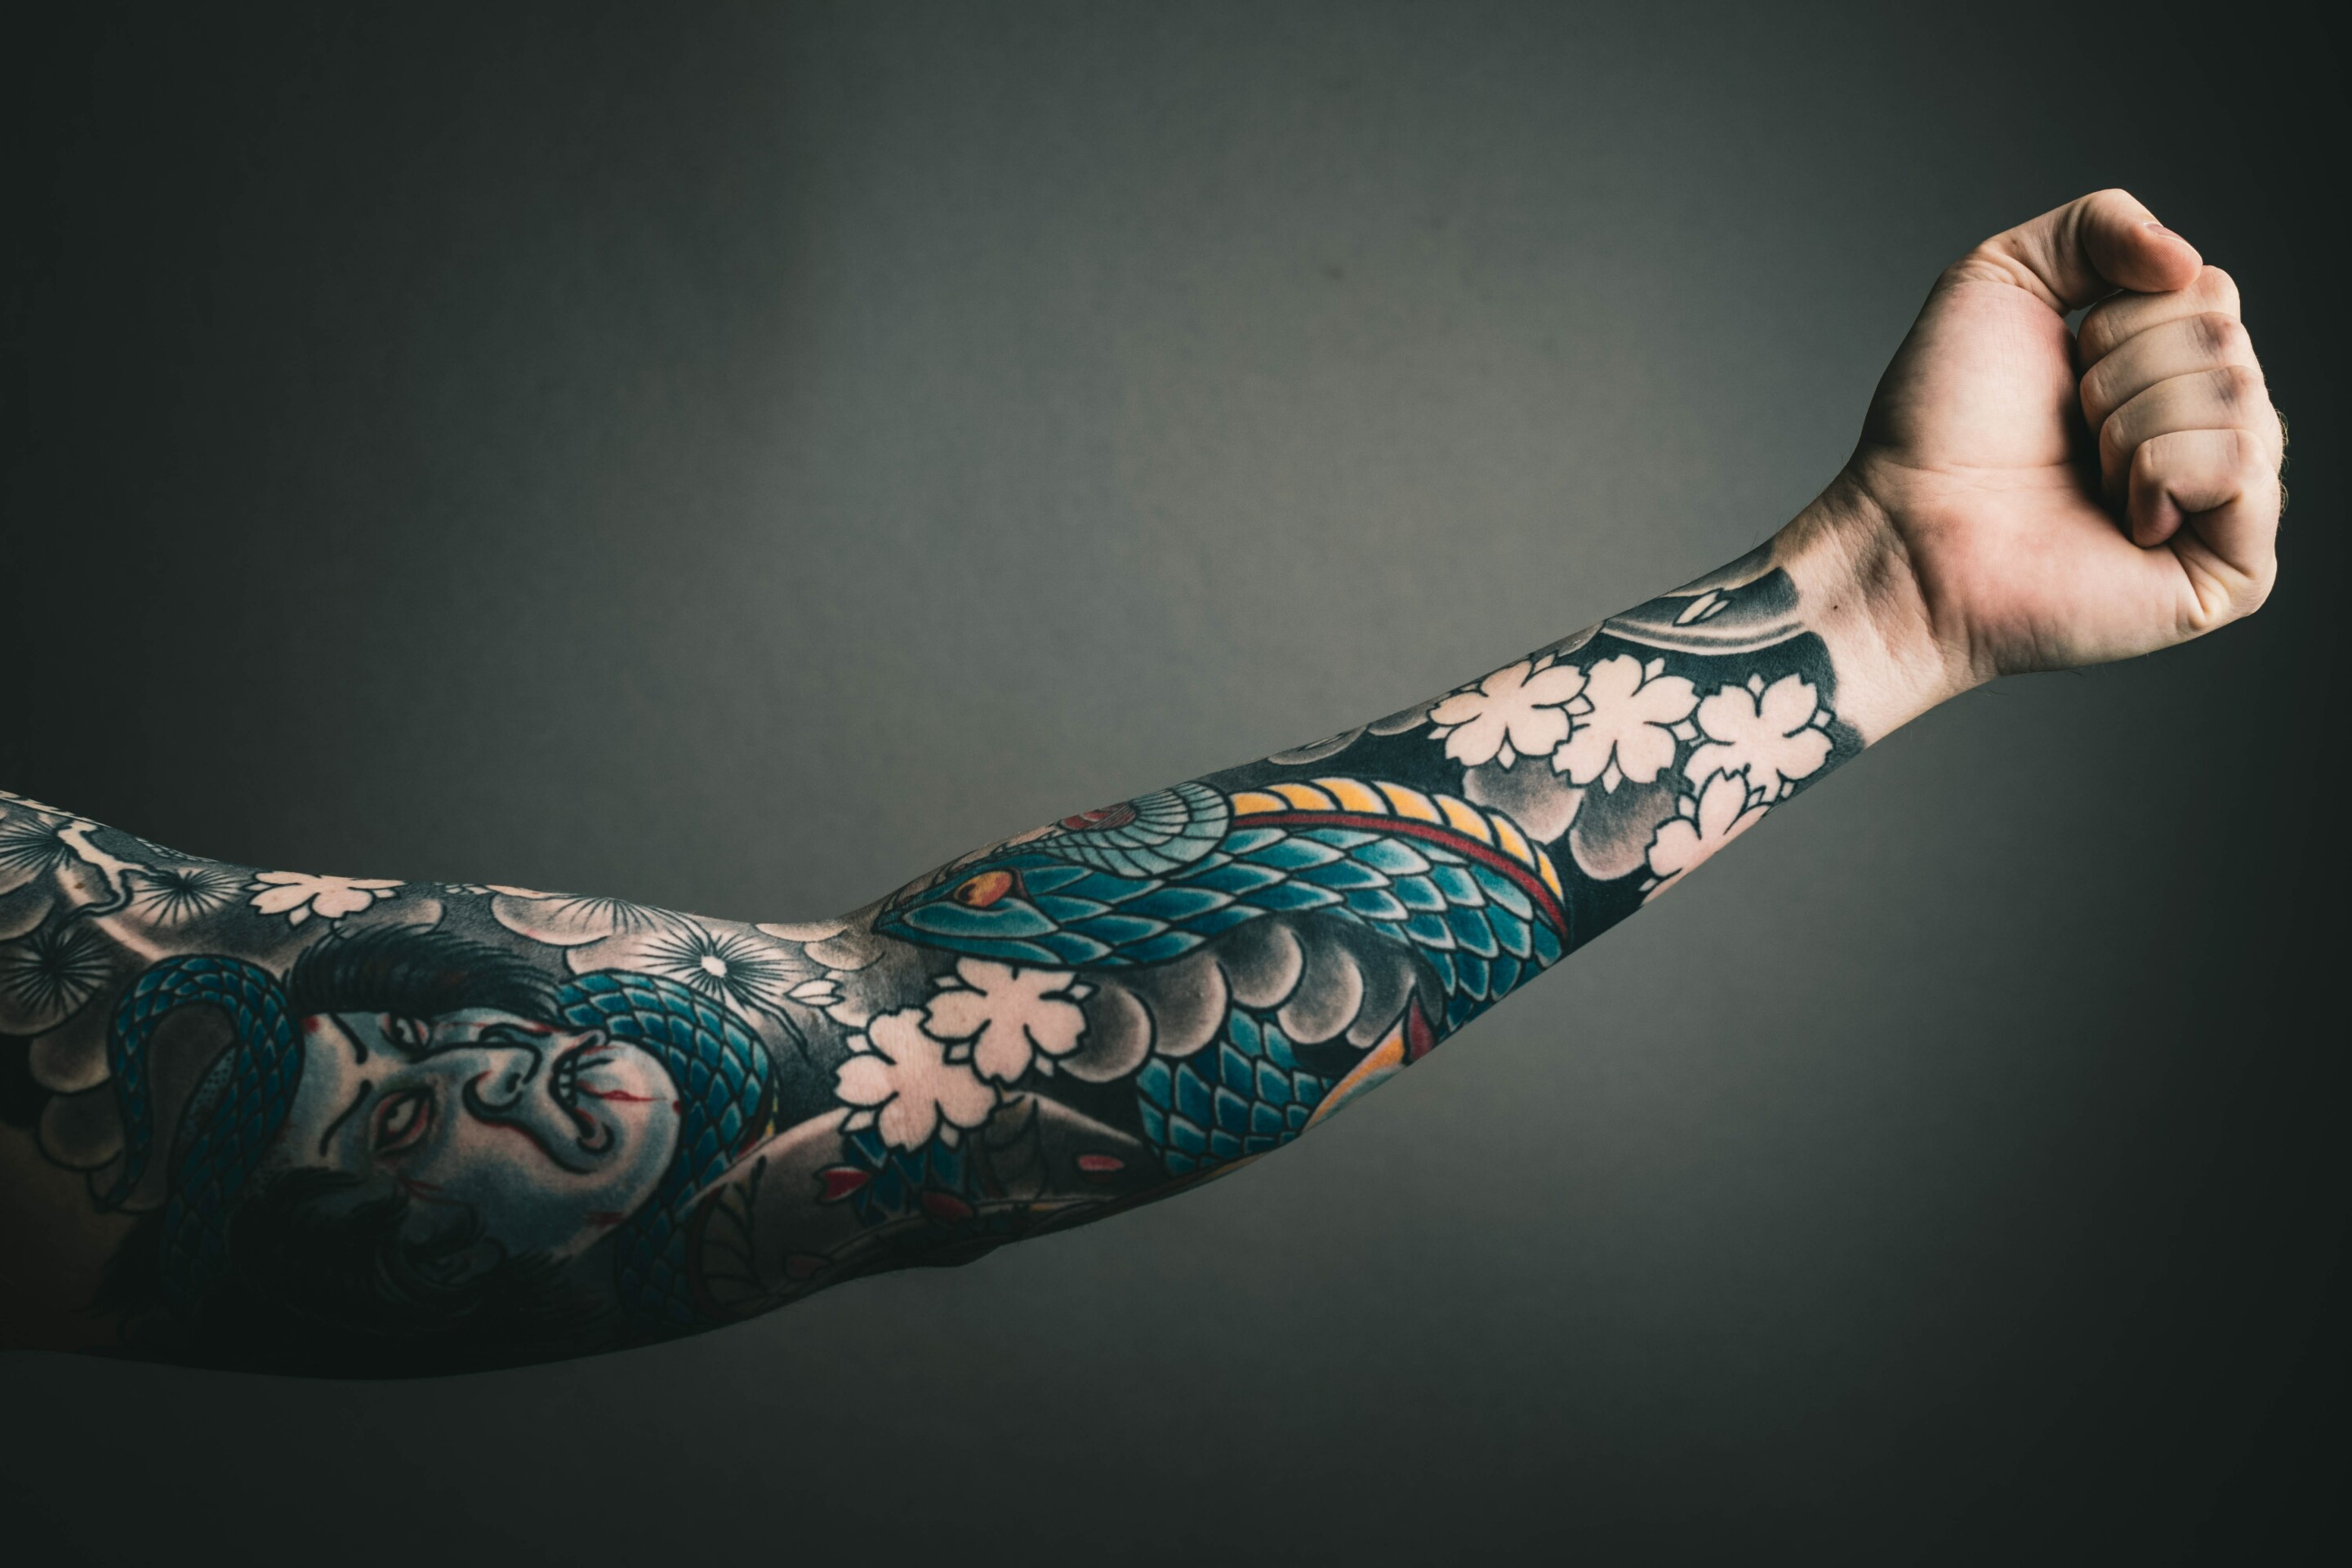 Tendências para tatuagem 2021 - 4 estilos e muitas imagens para inspirar